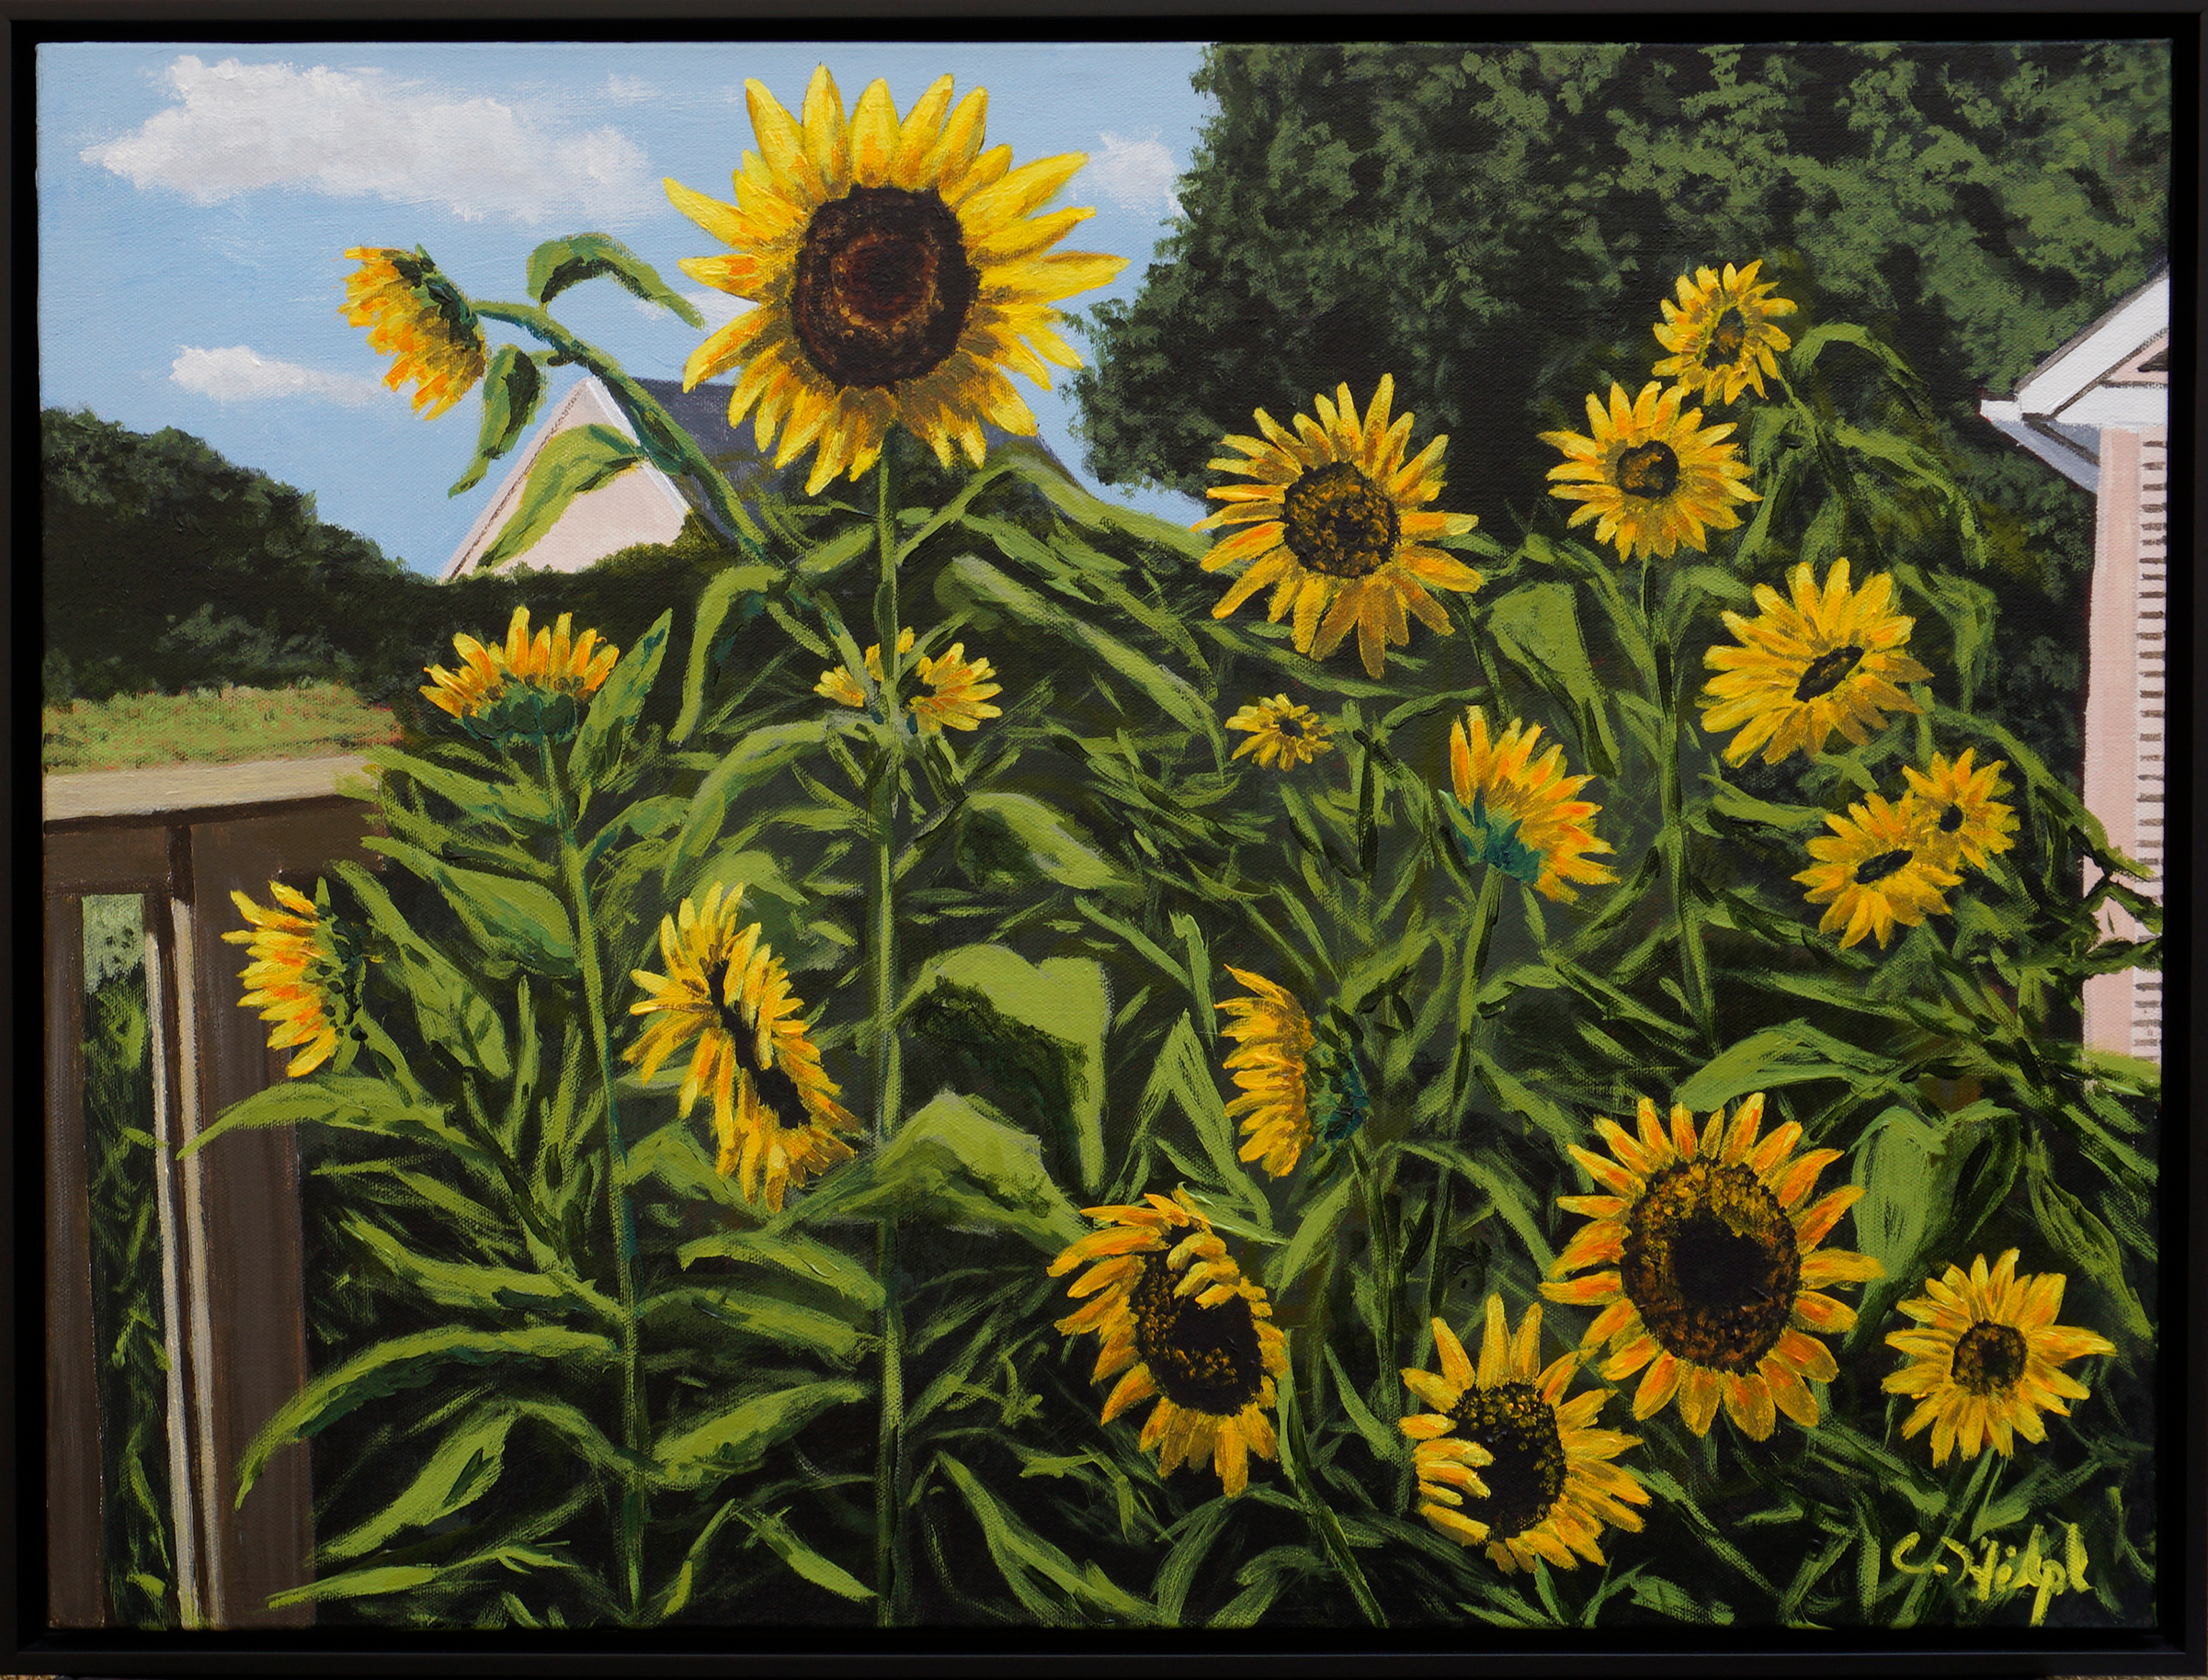 Sunflowers in garden2402x1828 uutyhw